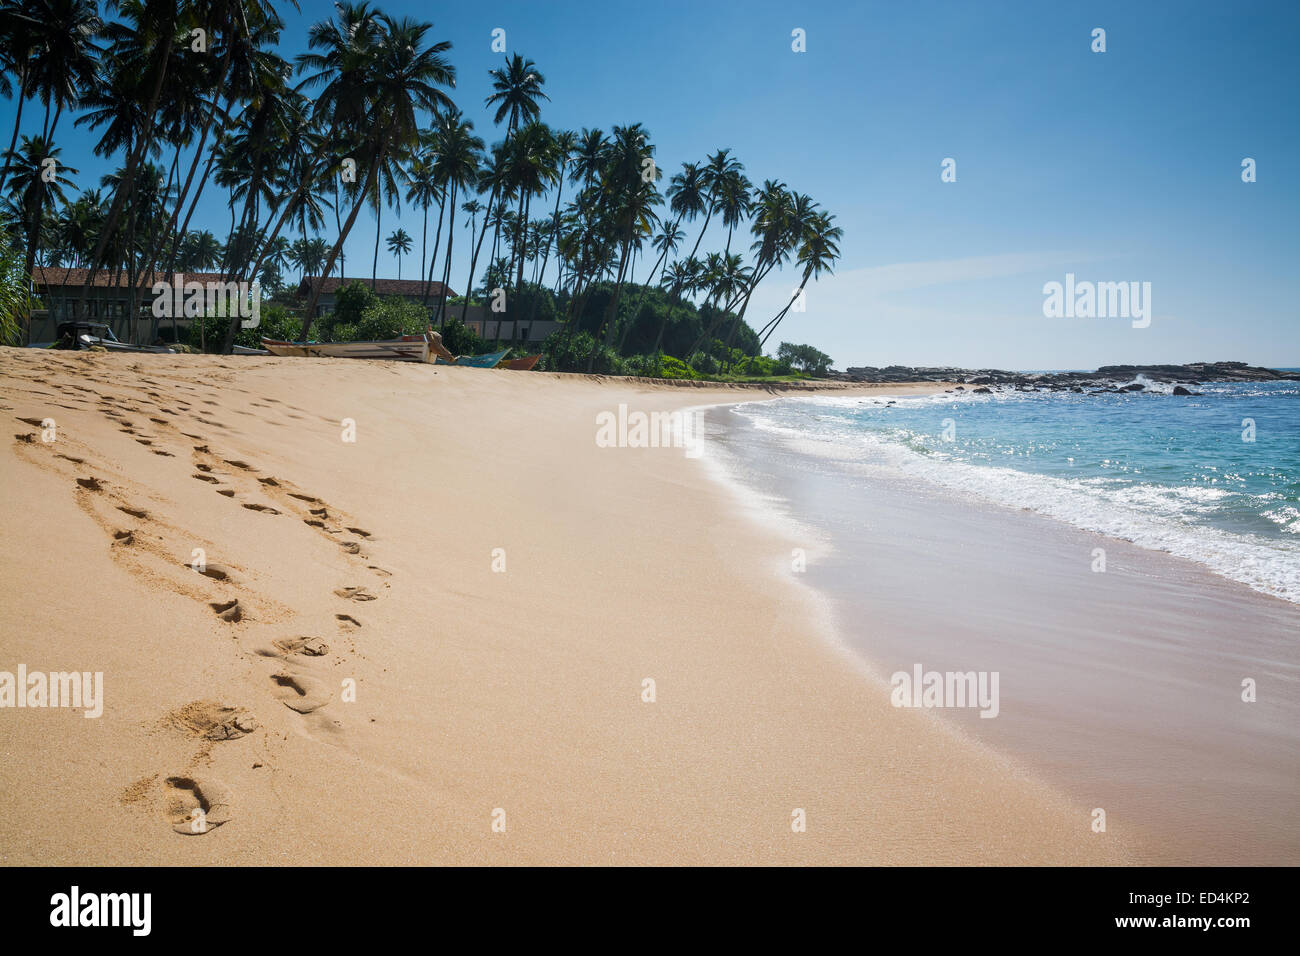 Paradise beach con palme da cocco e di impronte in sabbia dorata, Amanwella resort, Tangalle, sud della provincia, Sri Lanka, in Asia. Foto Stock